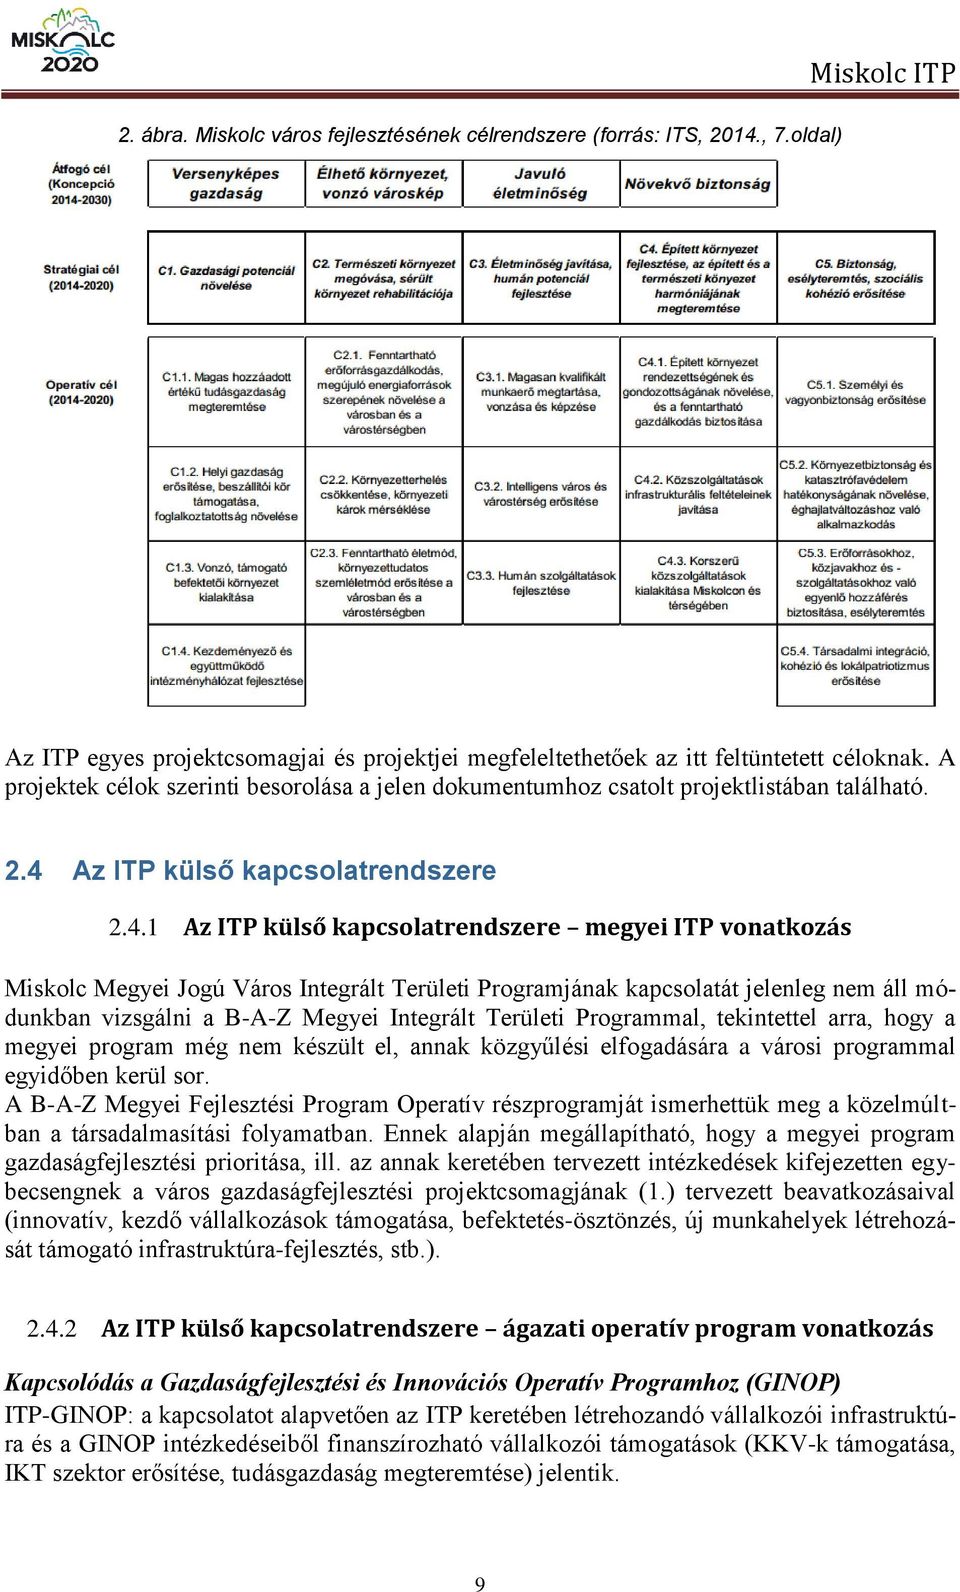 Az ITP külső kapcsolatrendszere 2.4.